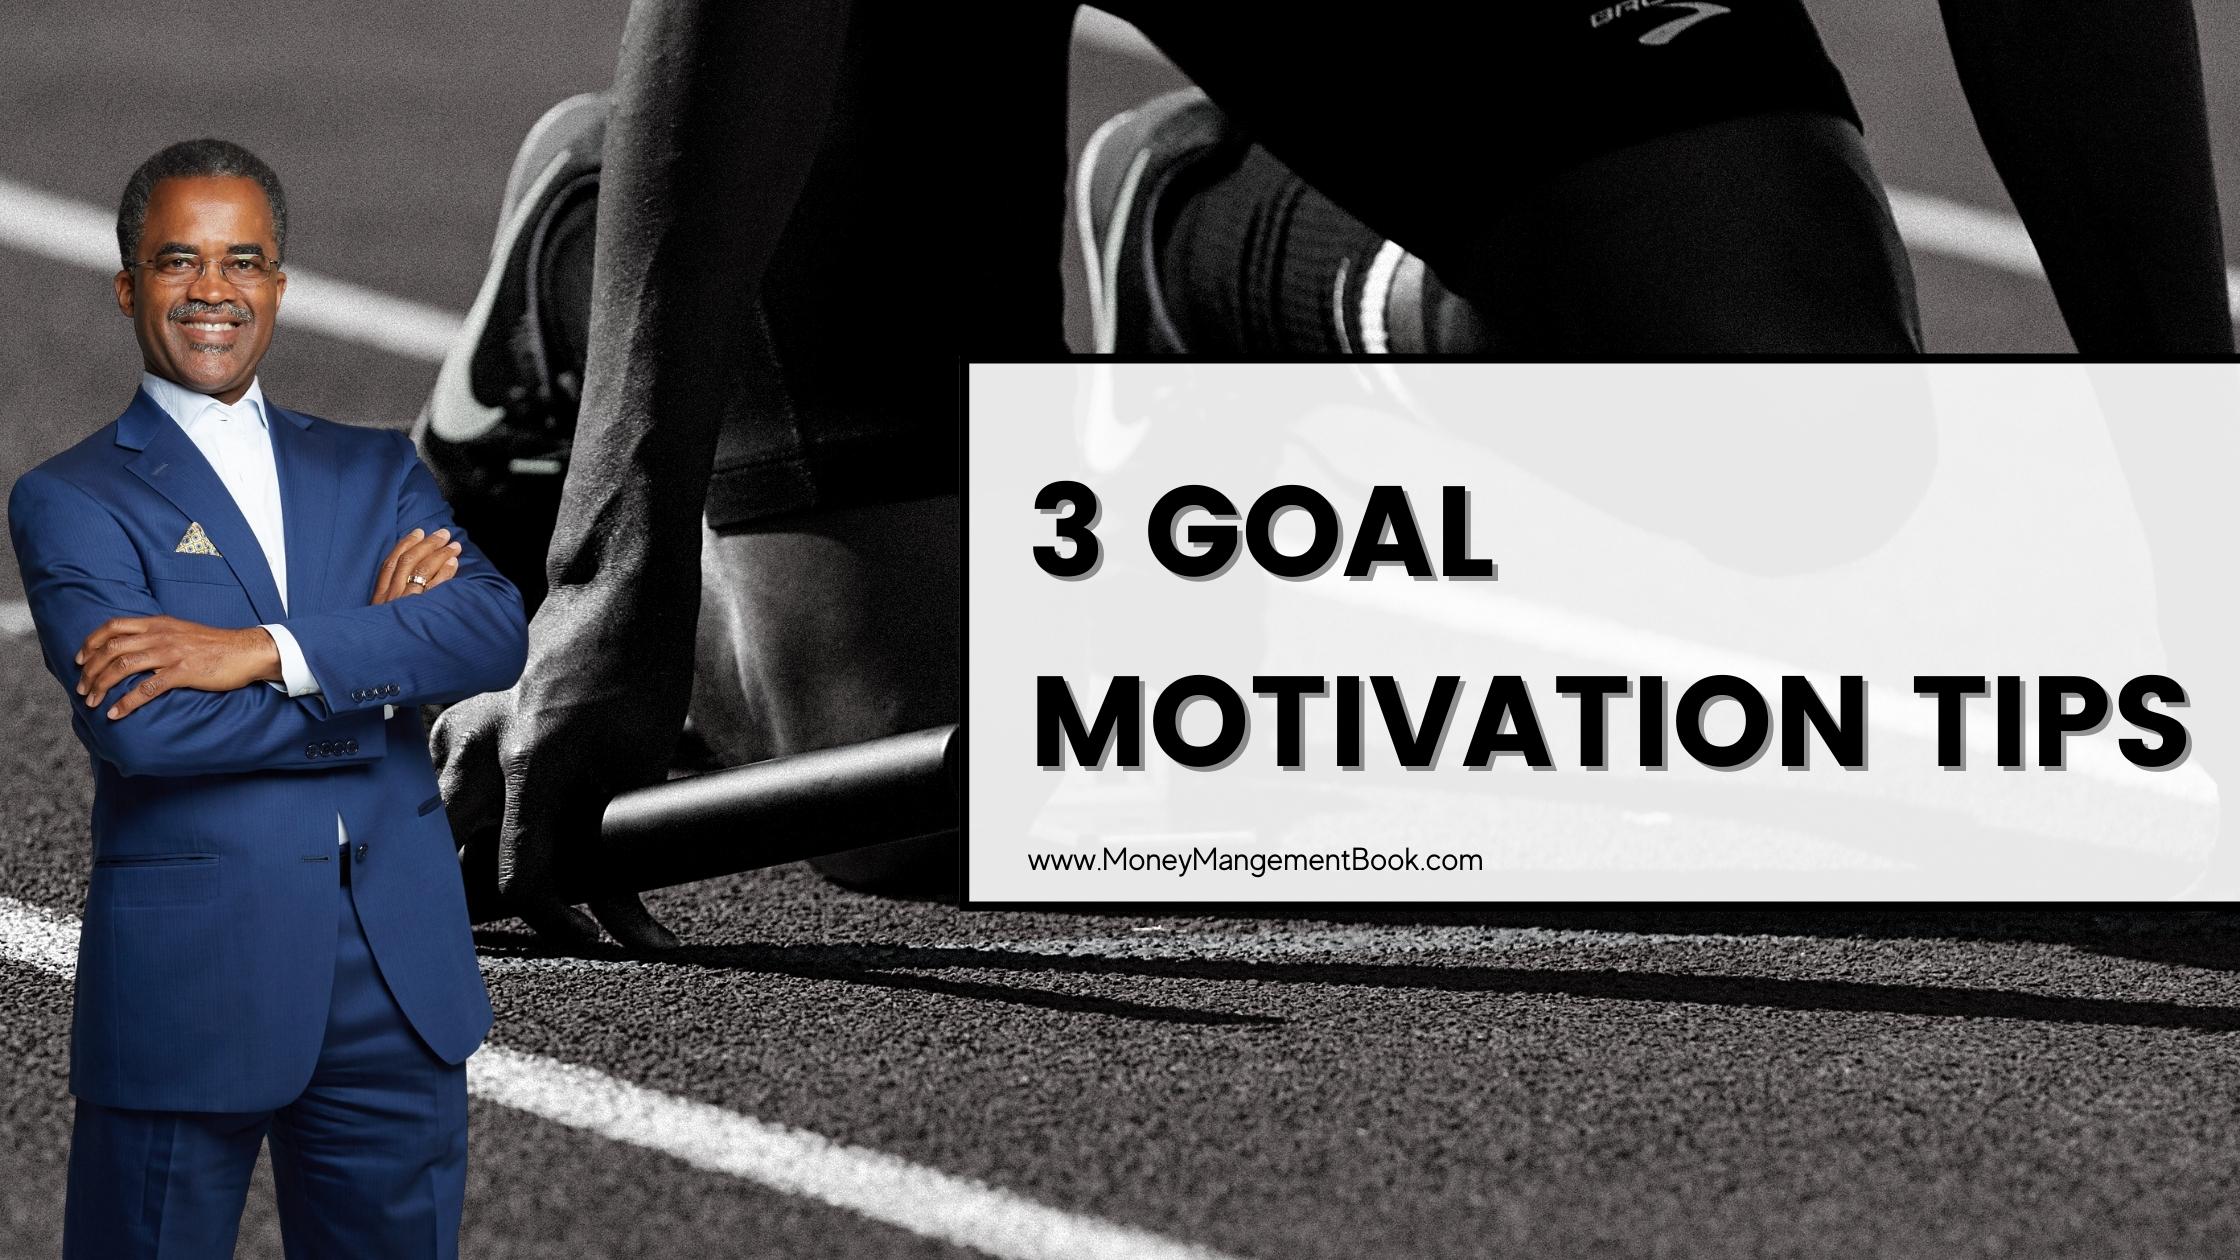 3 goal motivation tips blog post